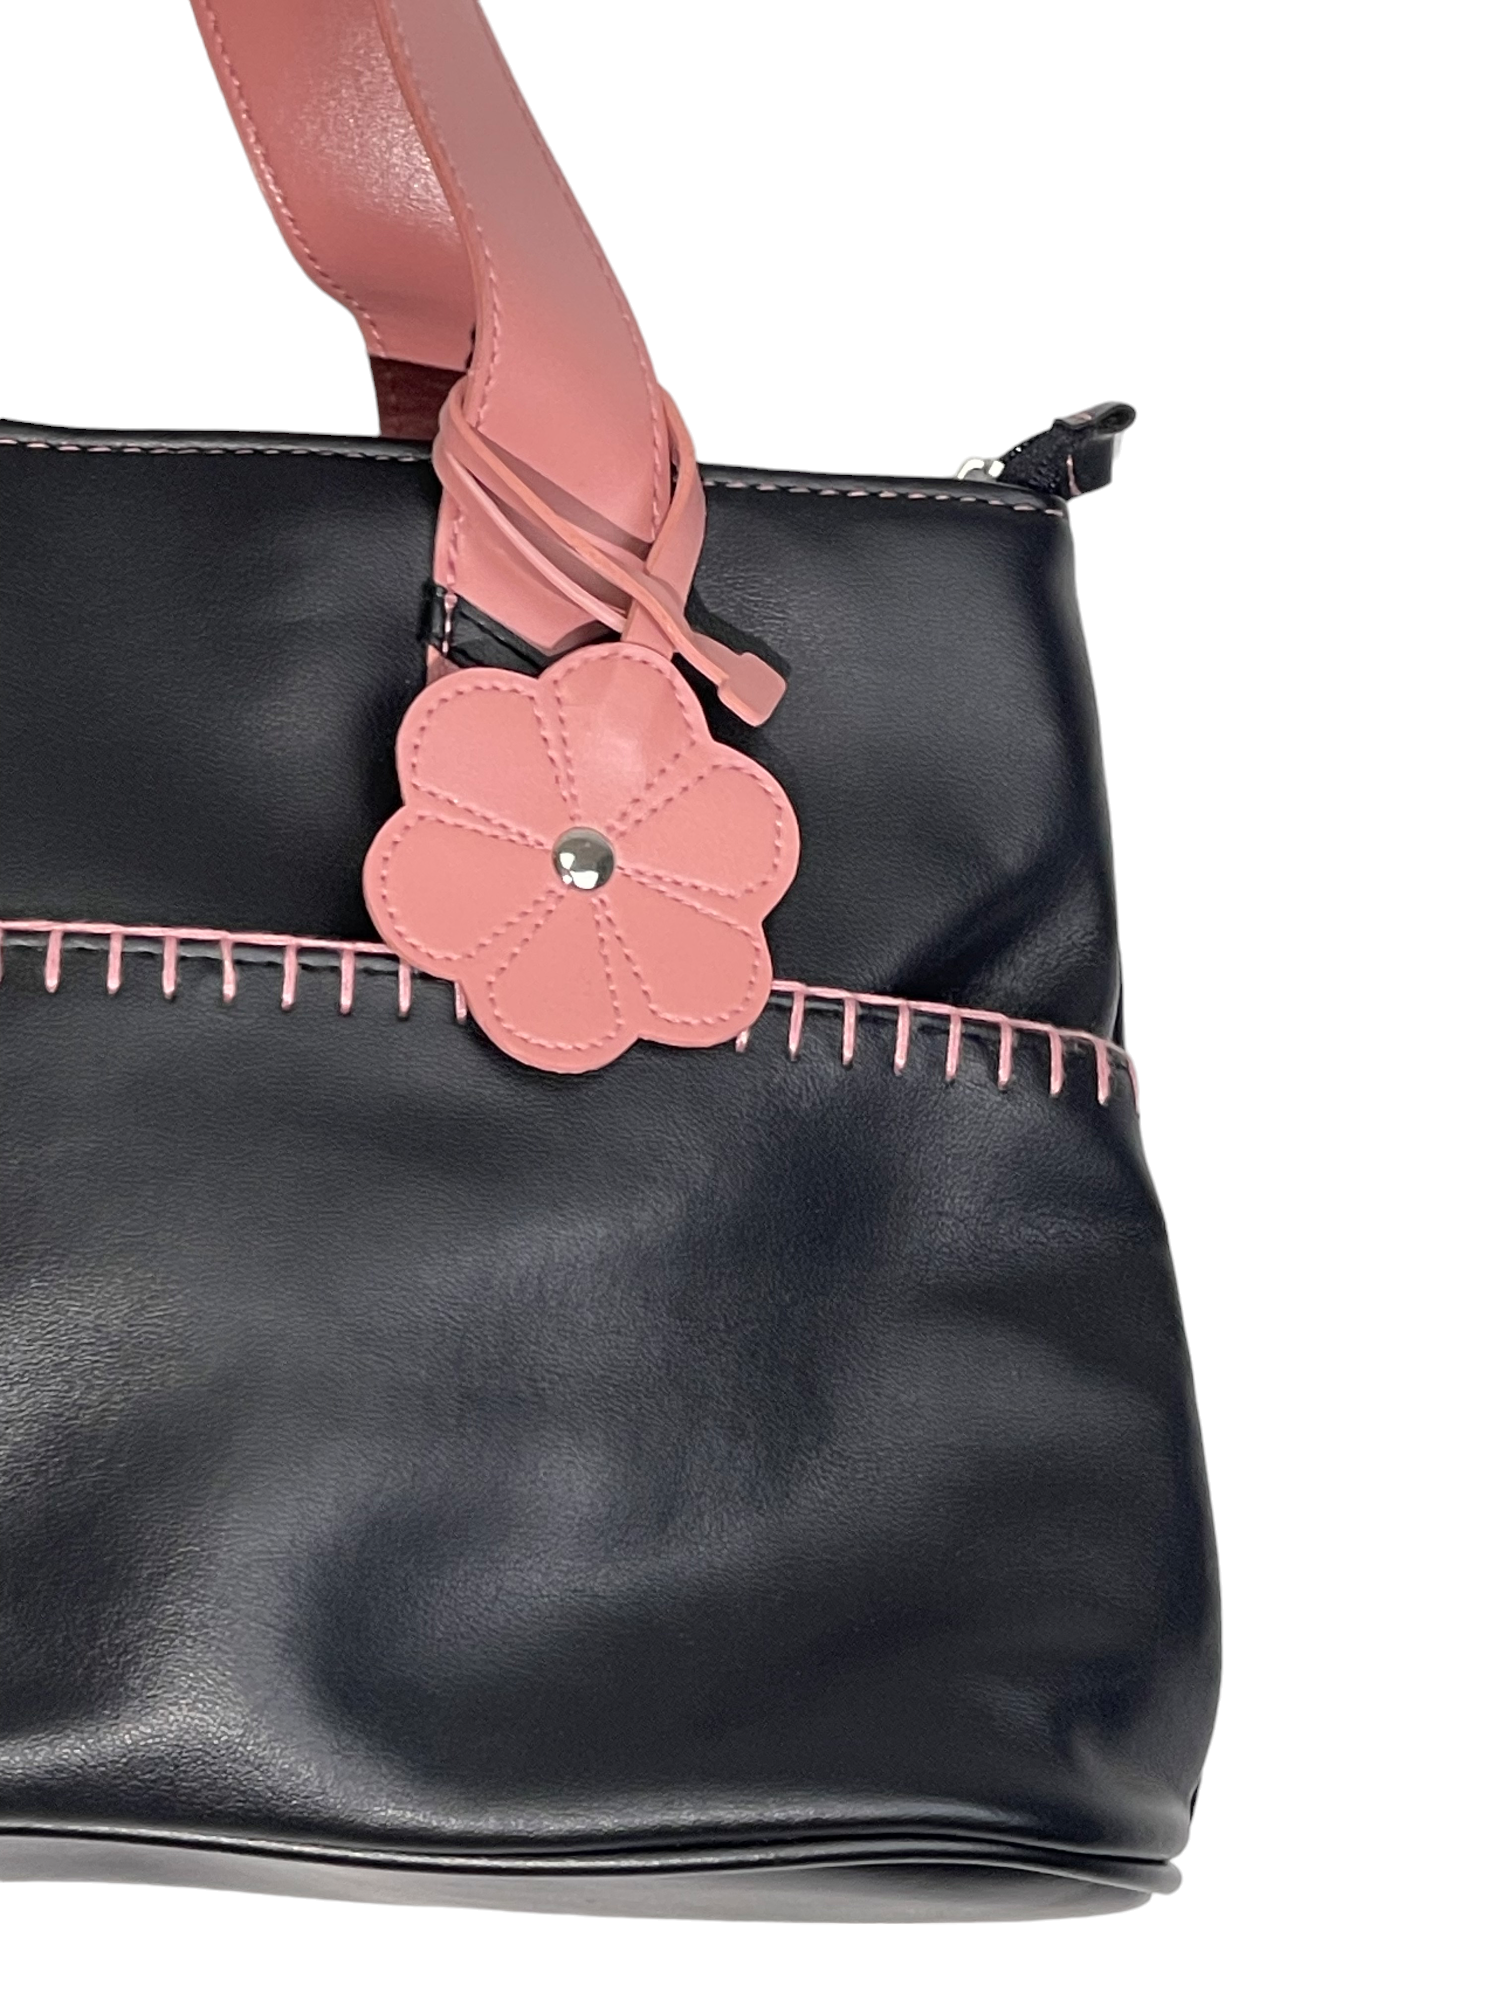 Black & Pink Leather Bag